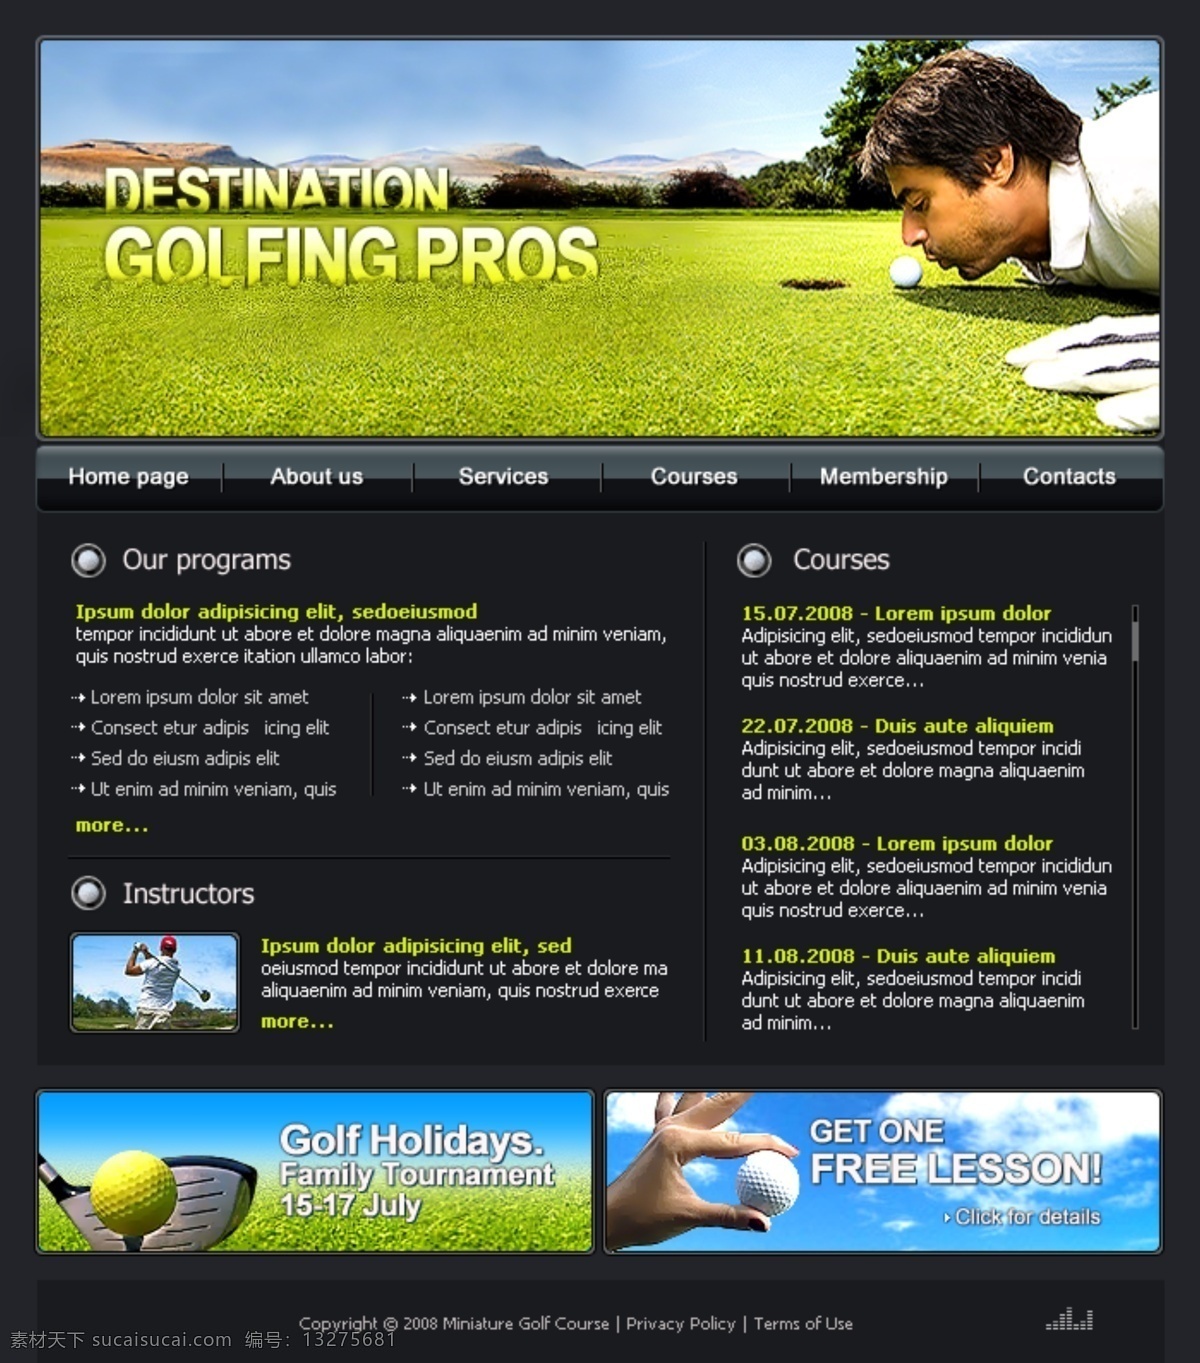 高尔夫 网站 模板 企业网页模板 高尔夫球 欧美网页模板 英文网页模板 英文模板 网页模板 源文件